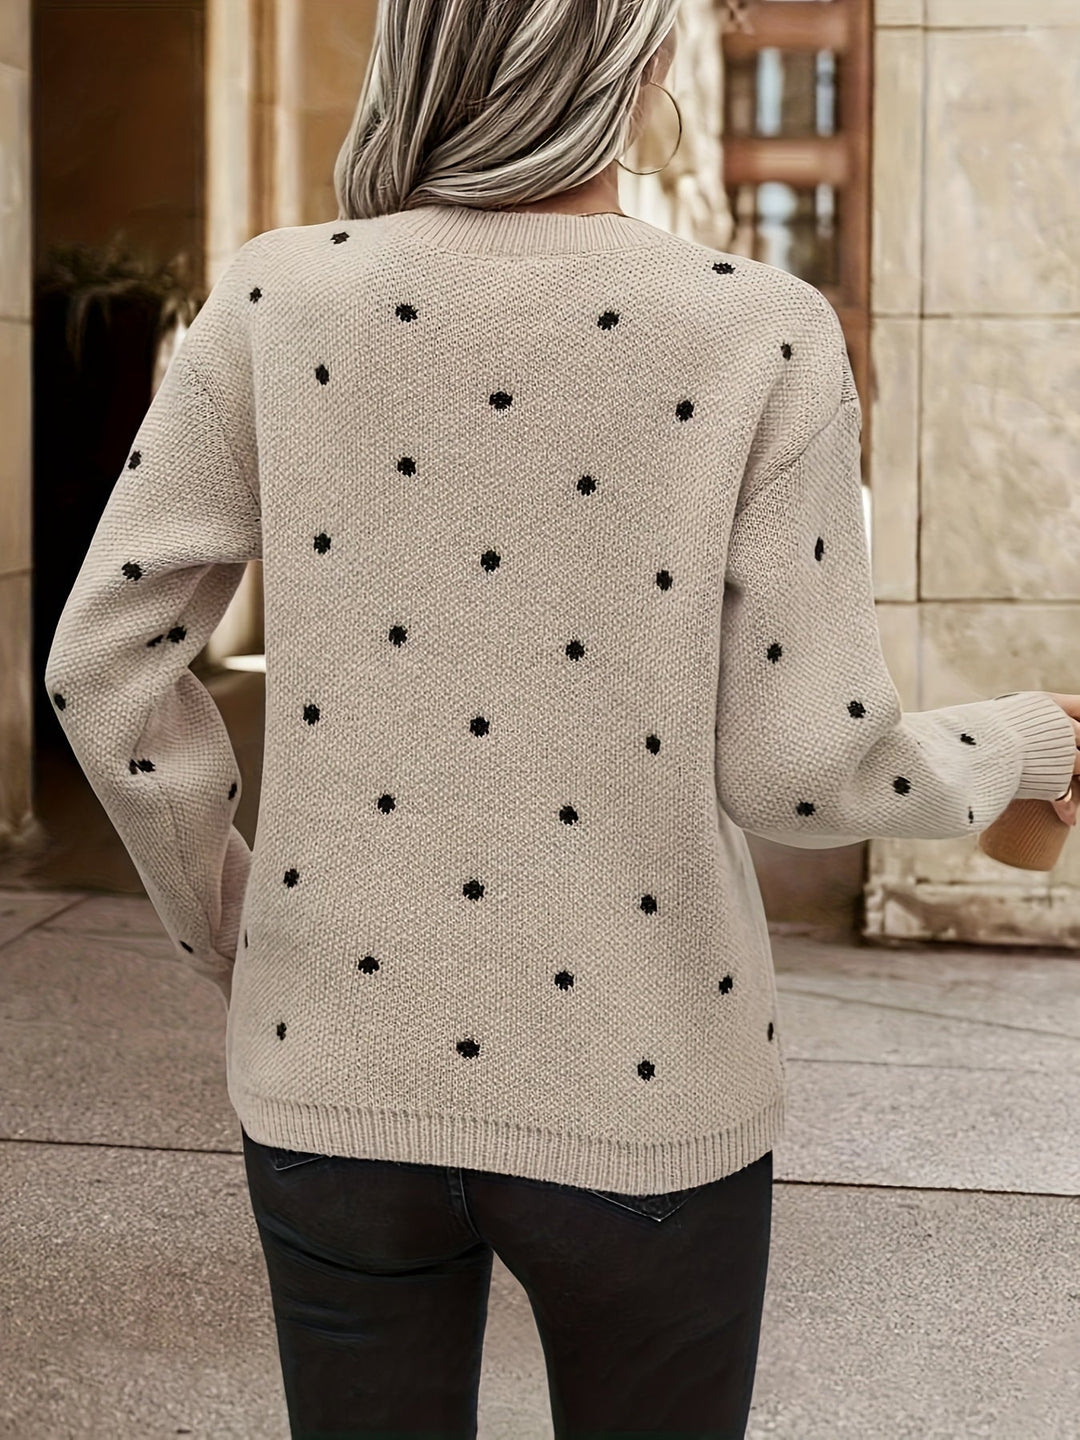 Stylish Knitted Sweater